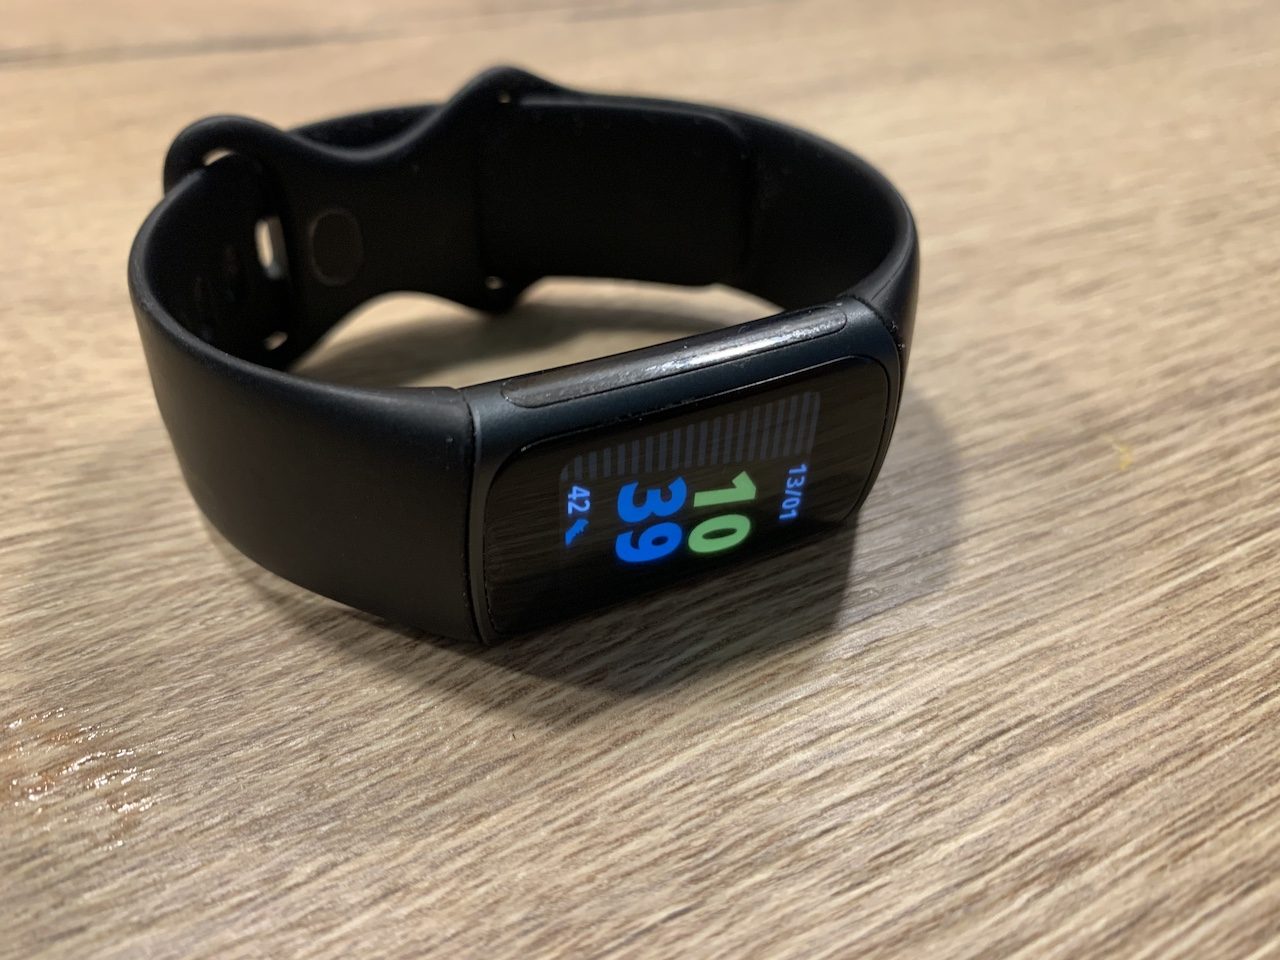 Fitbit dévoile enfin de nouveaux bracelets et montres connectés